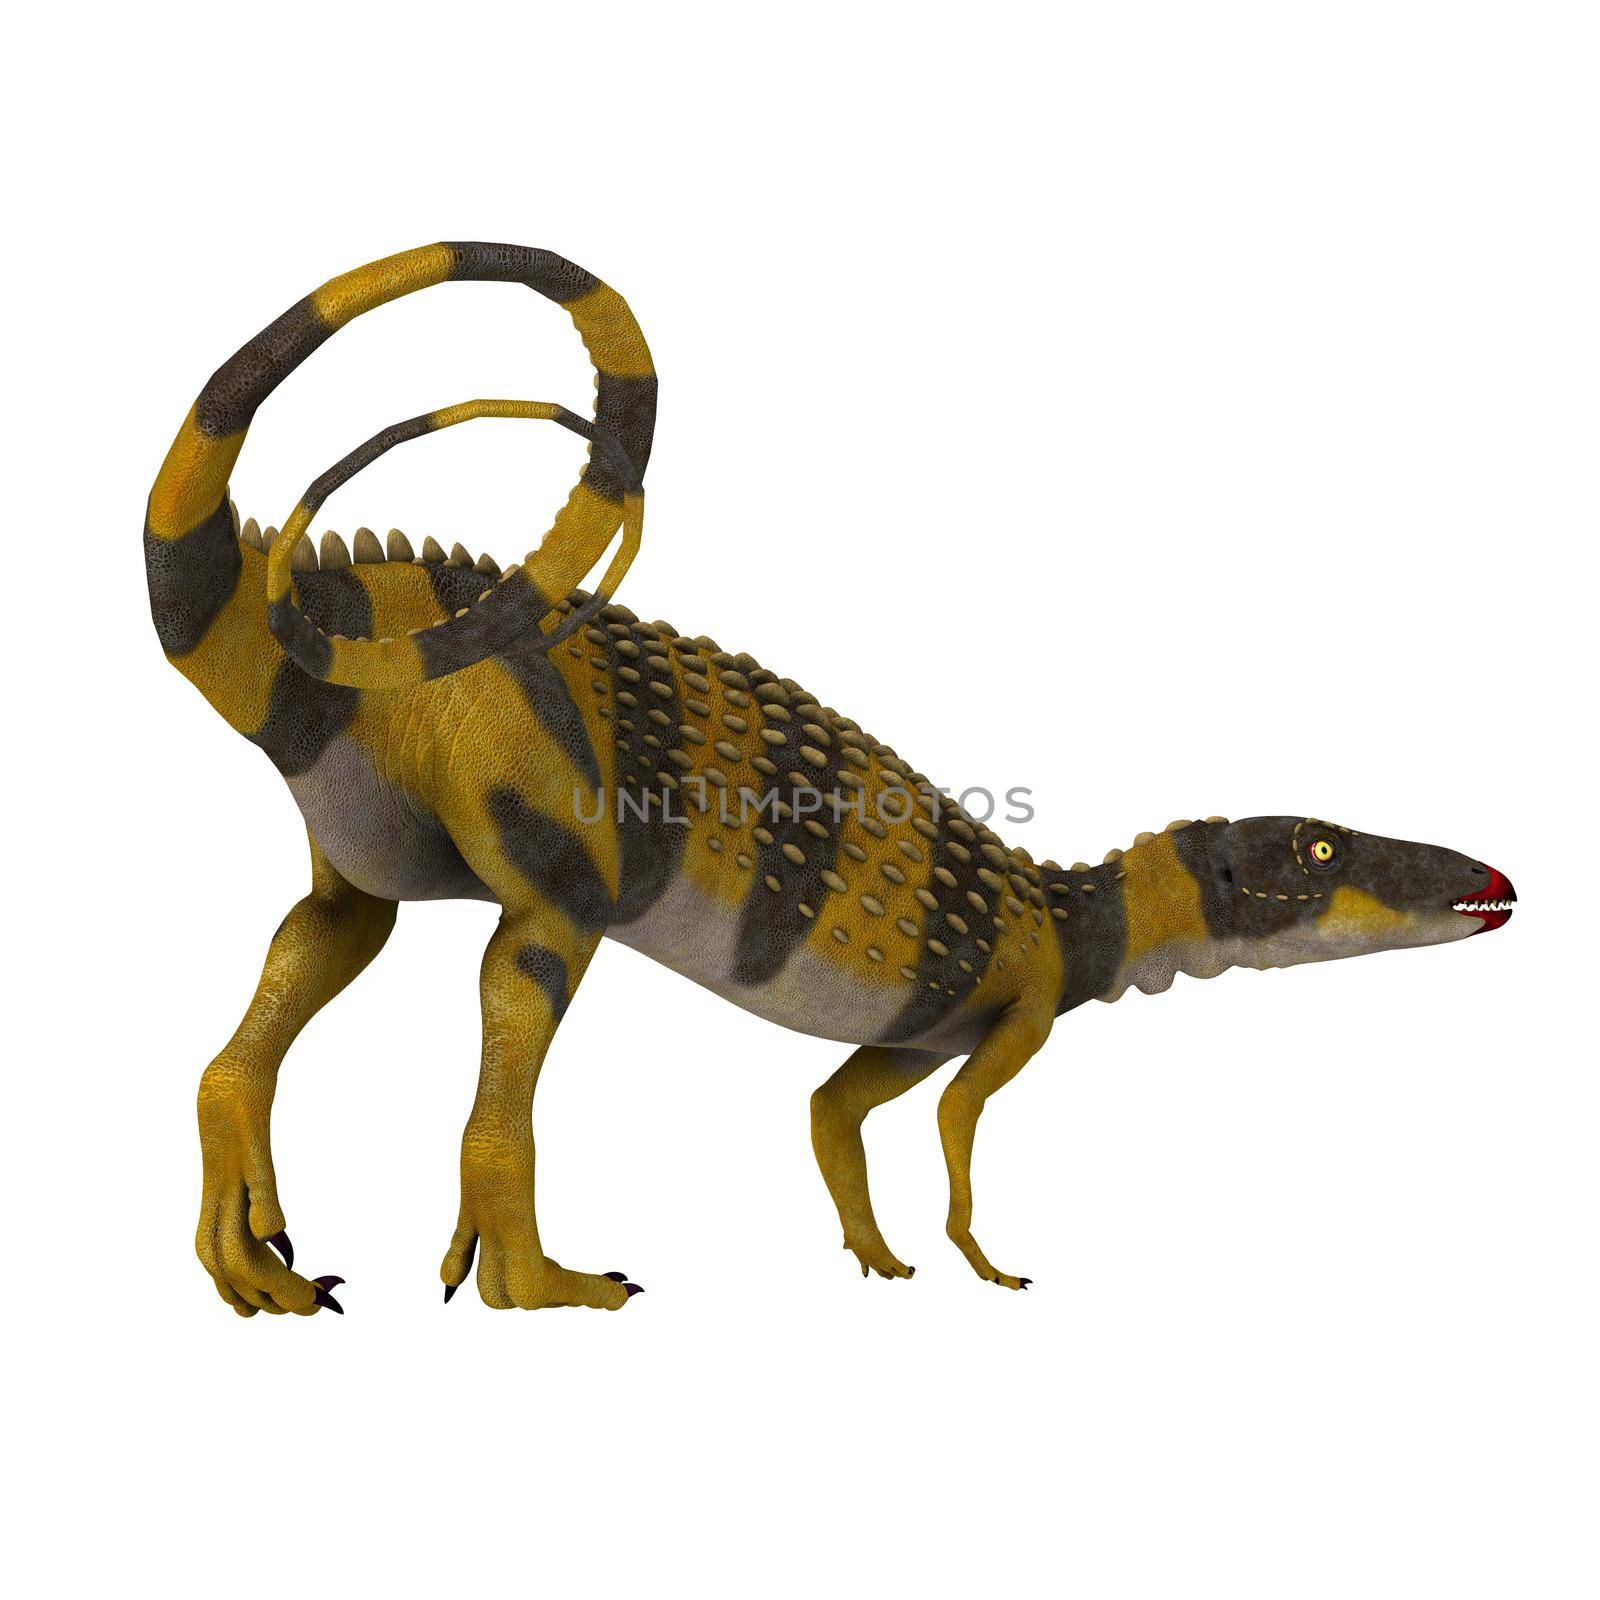 Scutellosaurus Dinosaur with Tail by Catmando